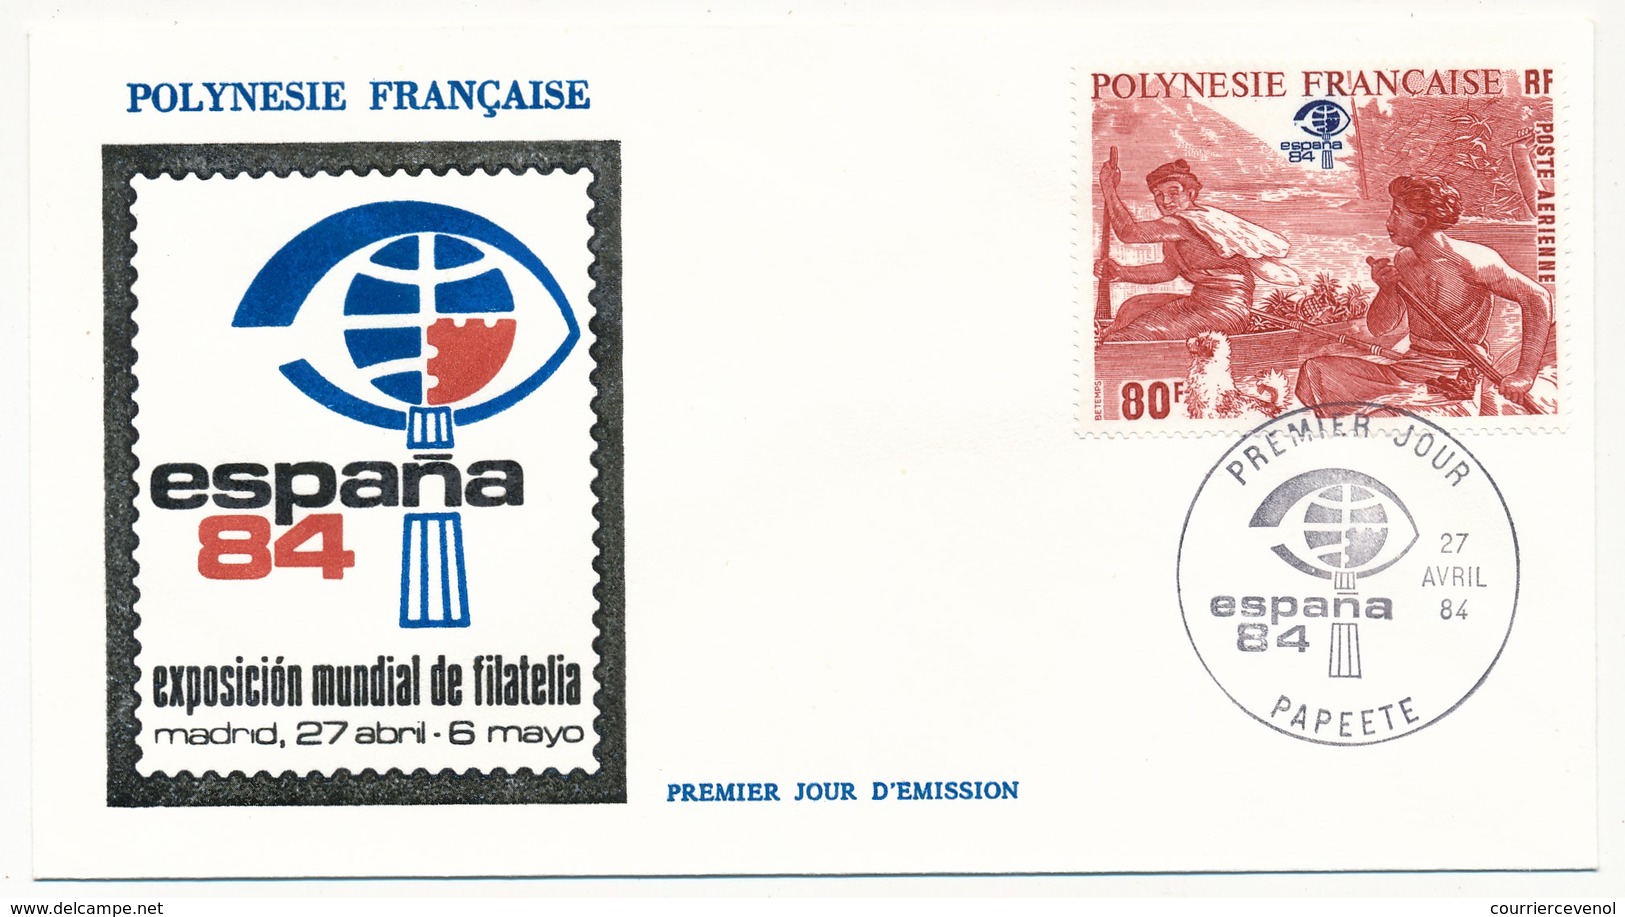 POLYNESIE FRANCAISE - FDC - Exposition Mondiale De Philatélie ESPANA 84 - 7 Avril 1984 - Papeete - FDC